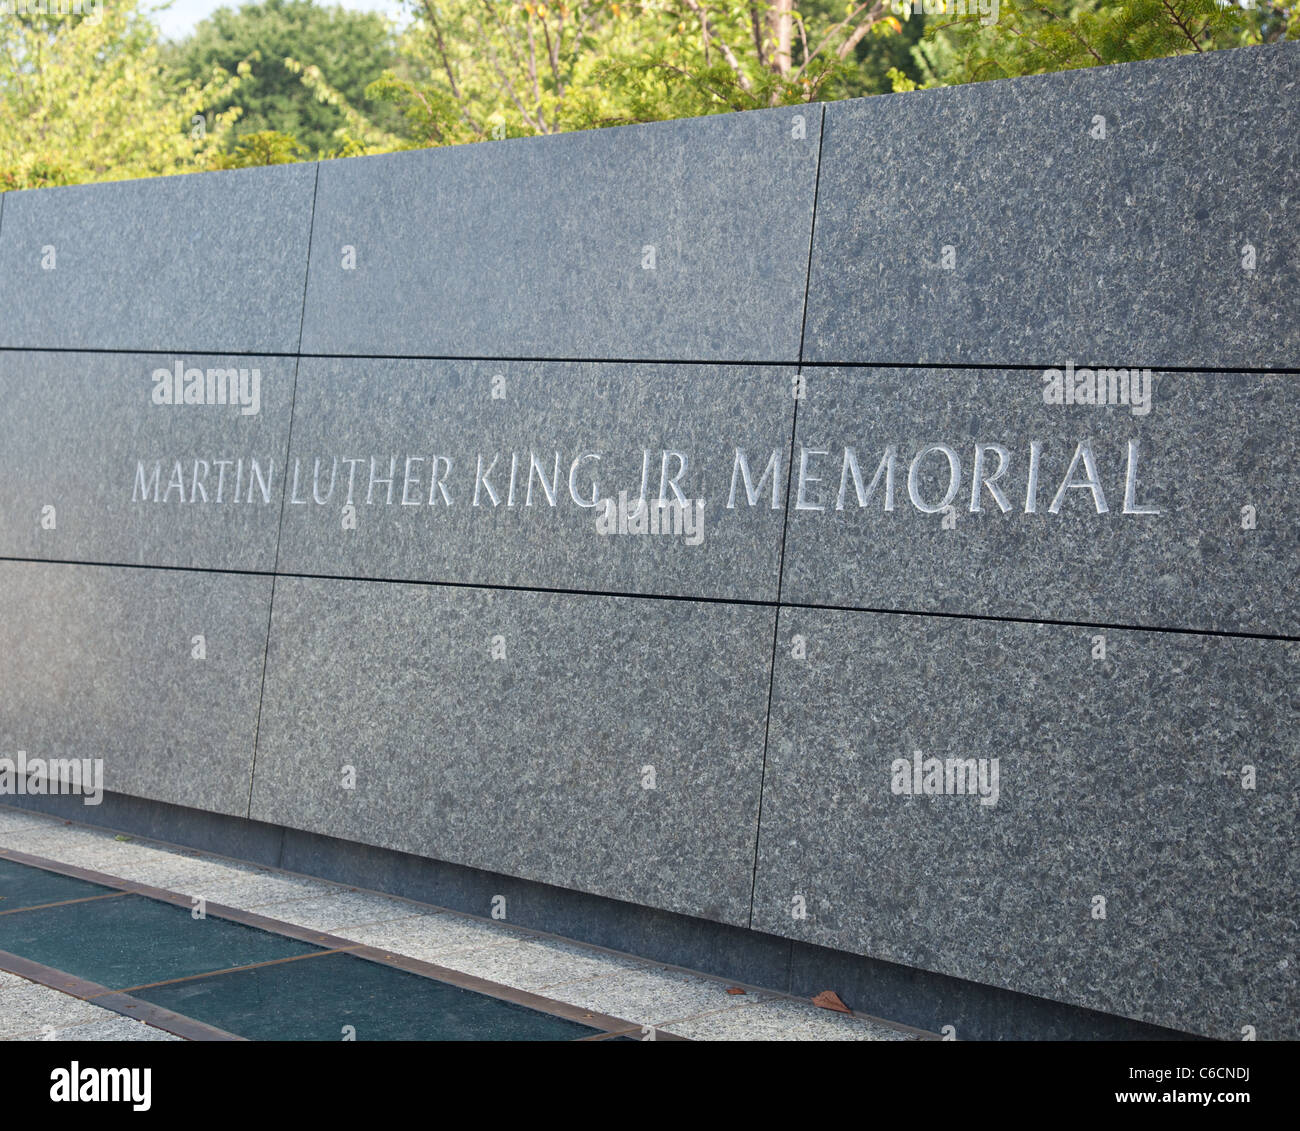 Washington, DC - 24 agosto: il monumento a Martin Luther King a Washington DC è dedicata dal presidente Obama il 28 agosto 2011. Foto Stock